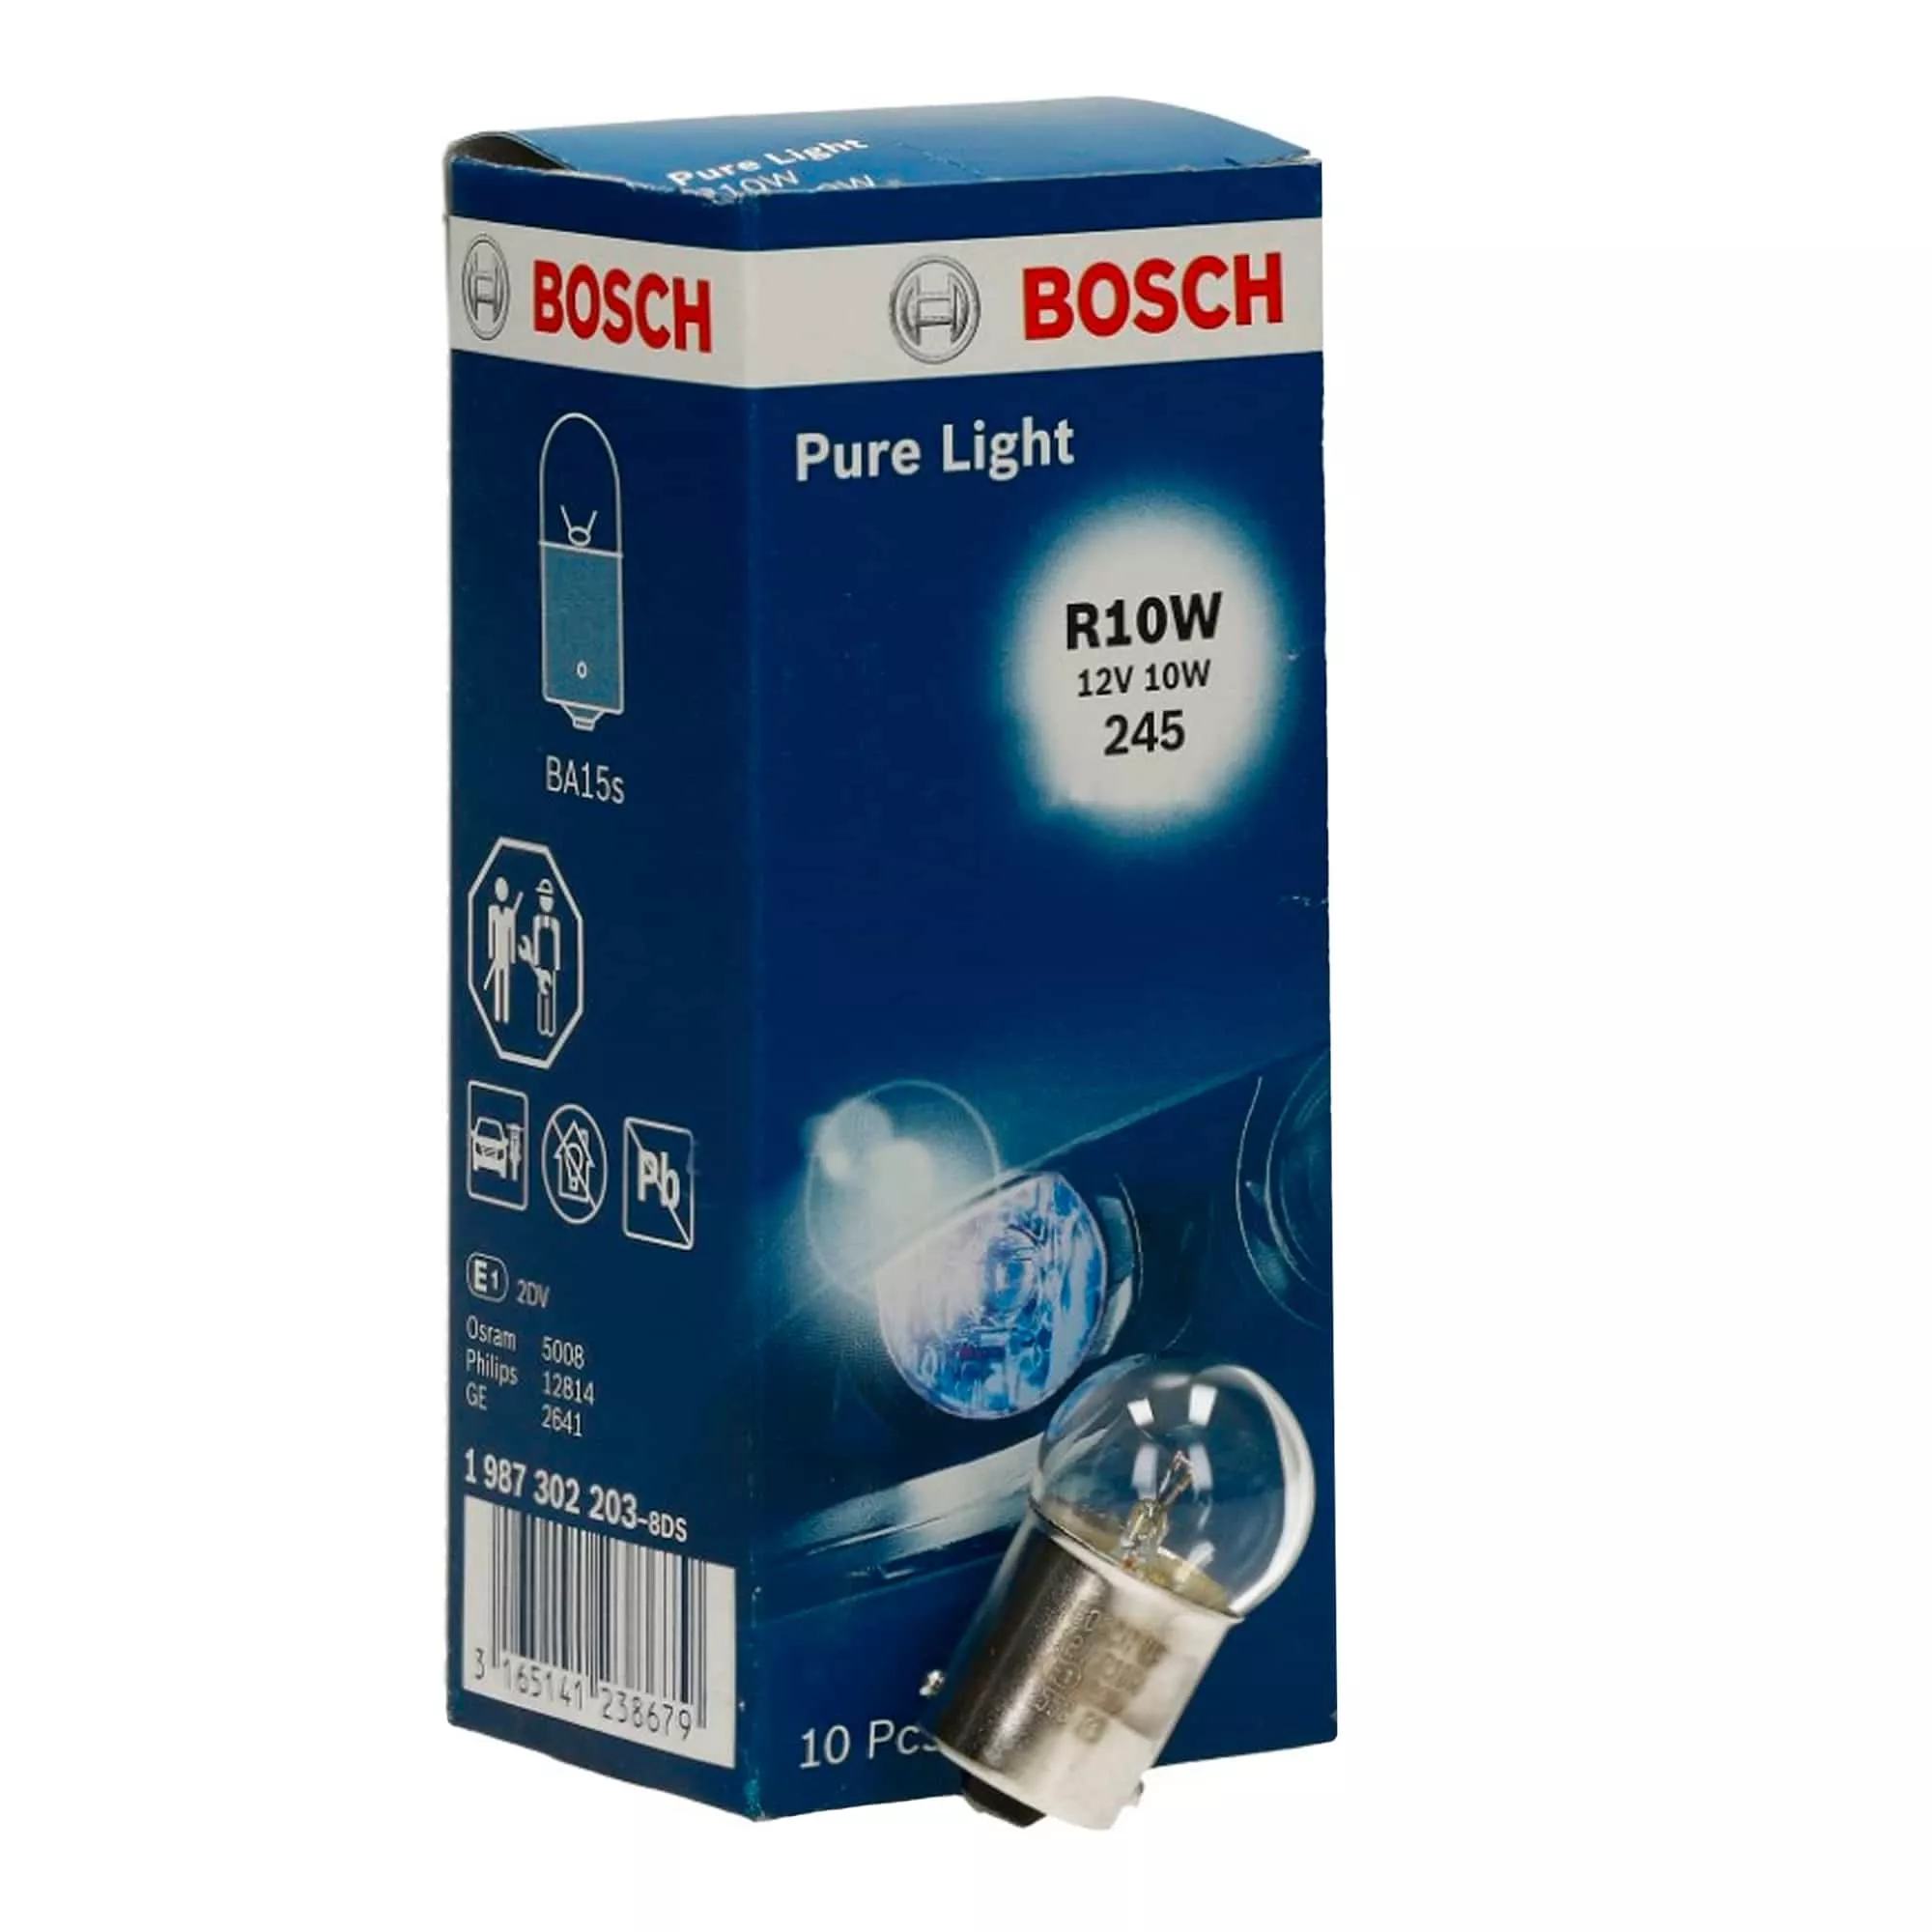 Лампа Bosch Pure Light R10W 12V 10W 1 987 302 203